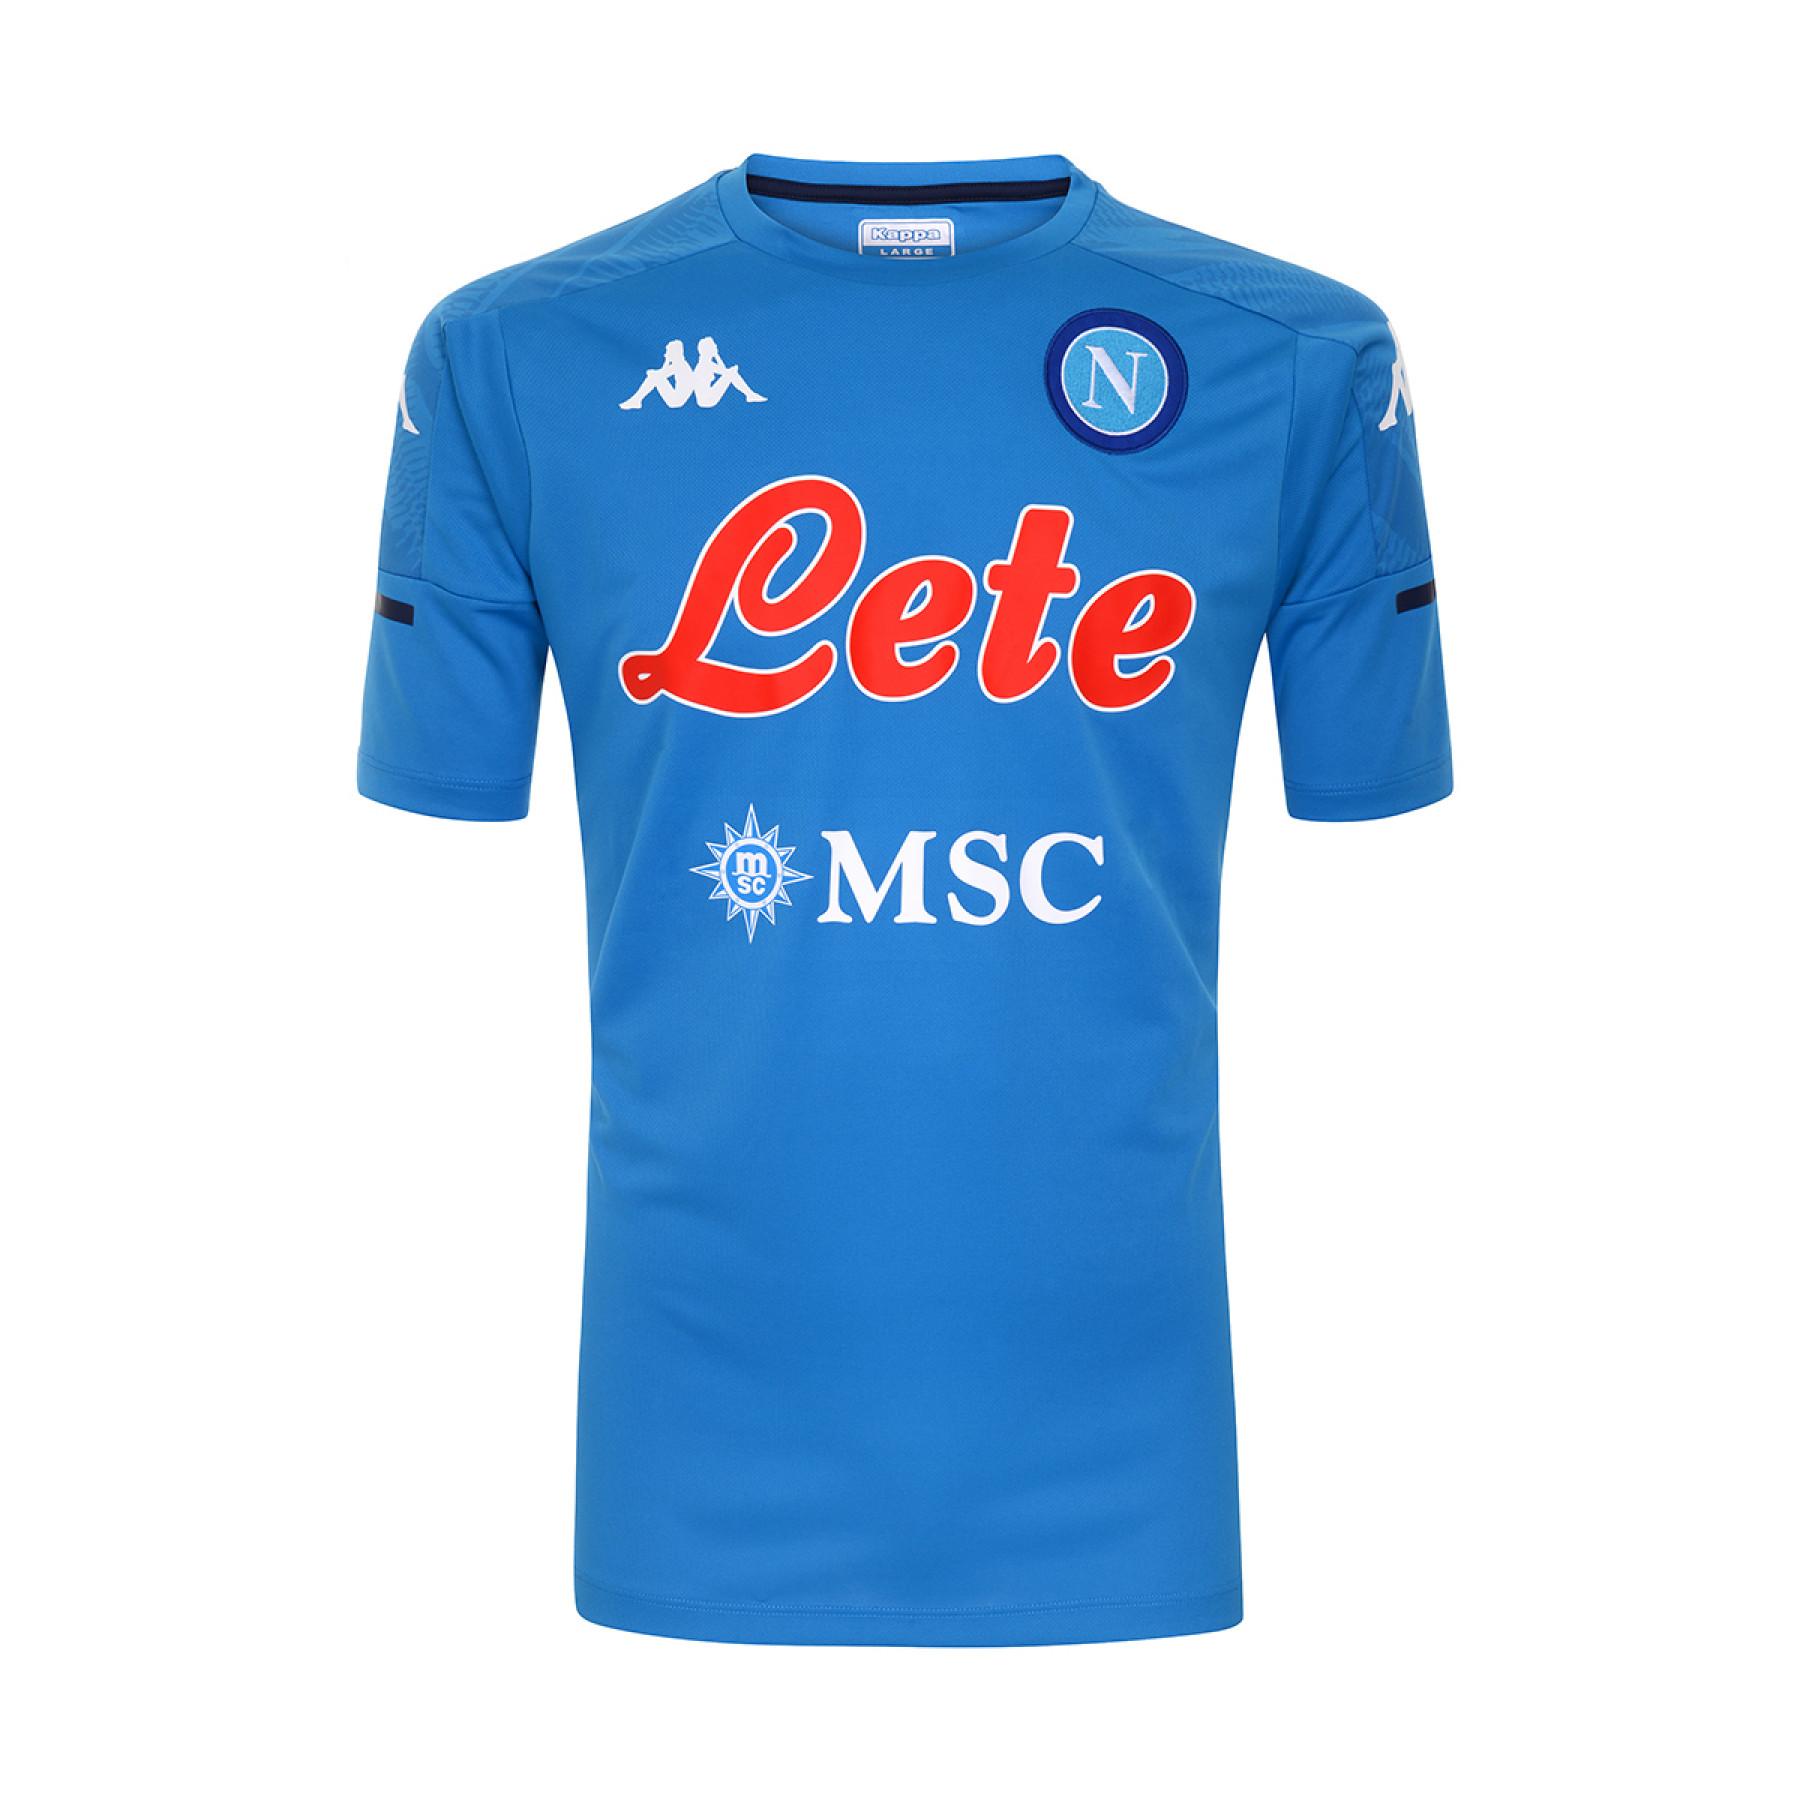 T-shirt för träning SSC Napoli 2020/21 abouo 4